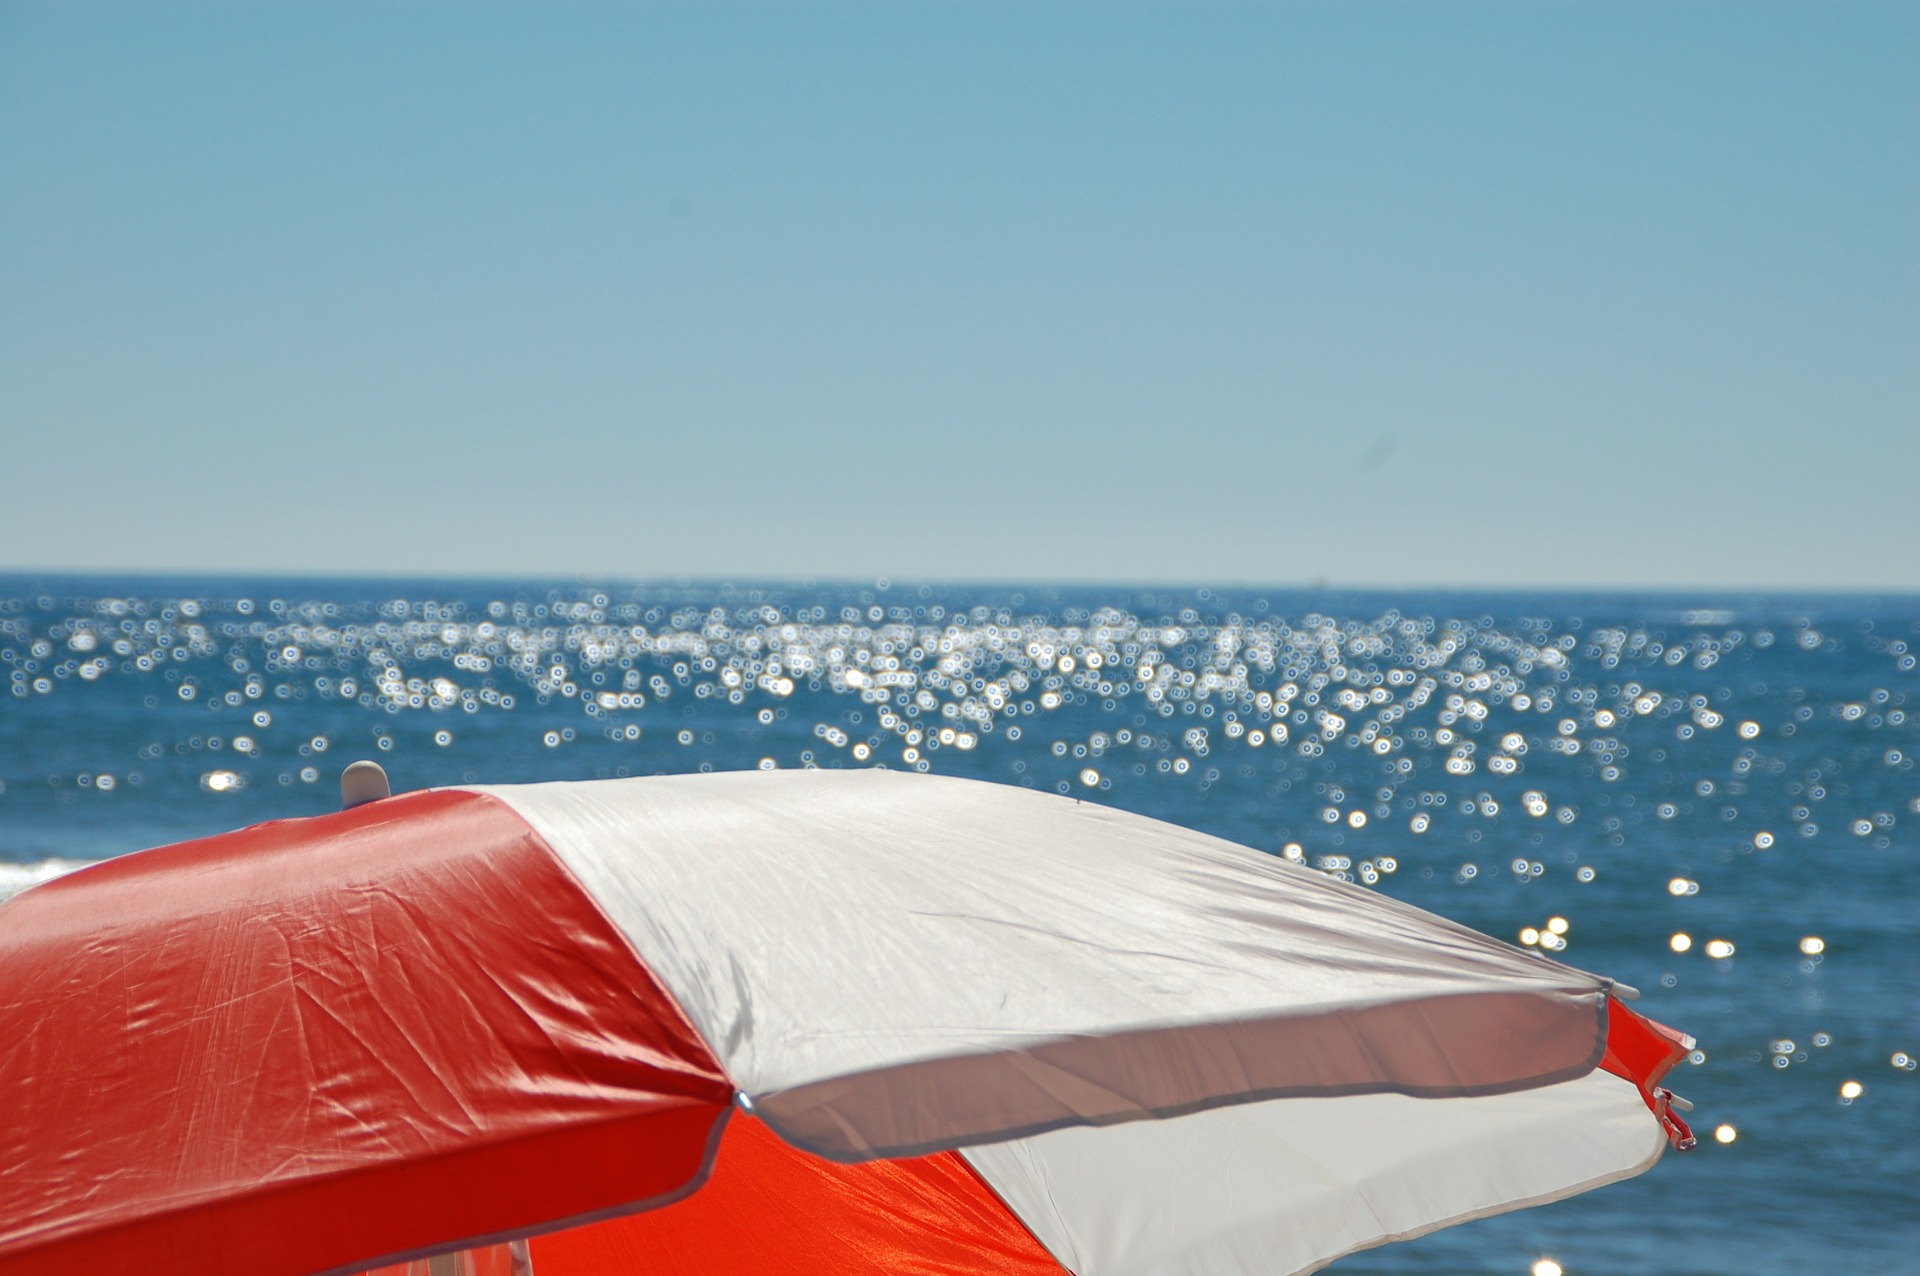 Viareggio: la spiaggia libera lungo il molo diventa attrezzata, 15 ombrelloni per le fasce più bisognose